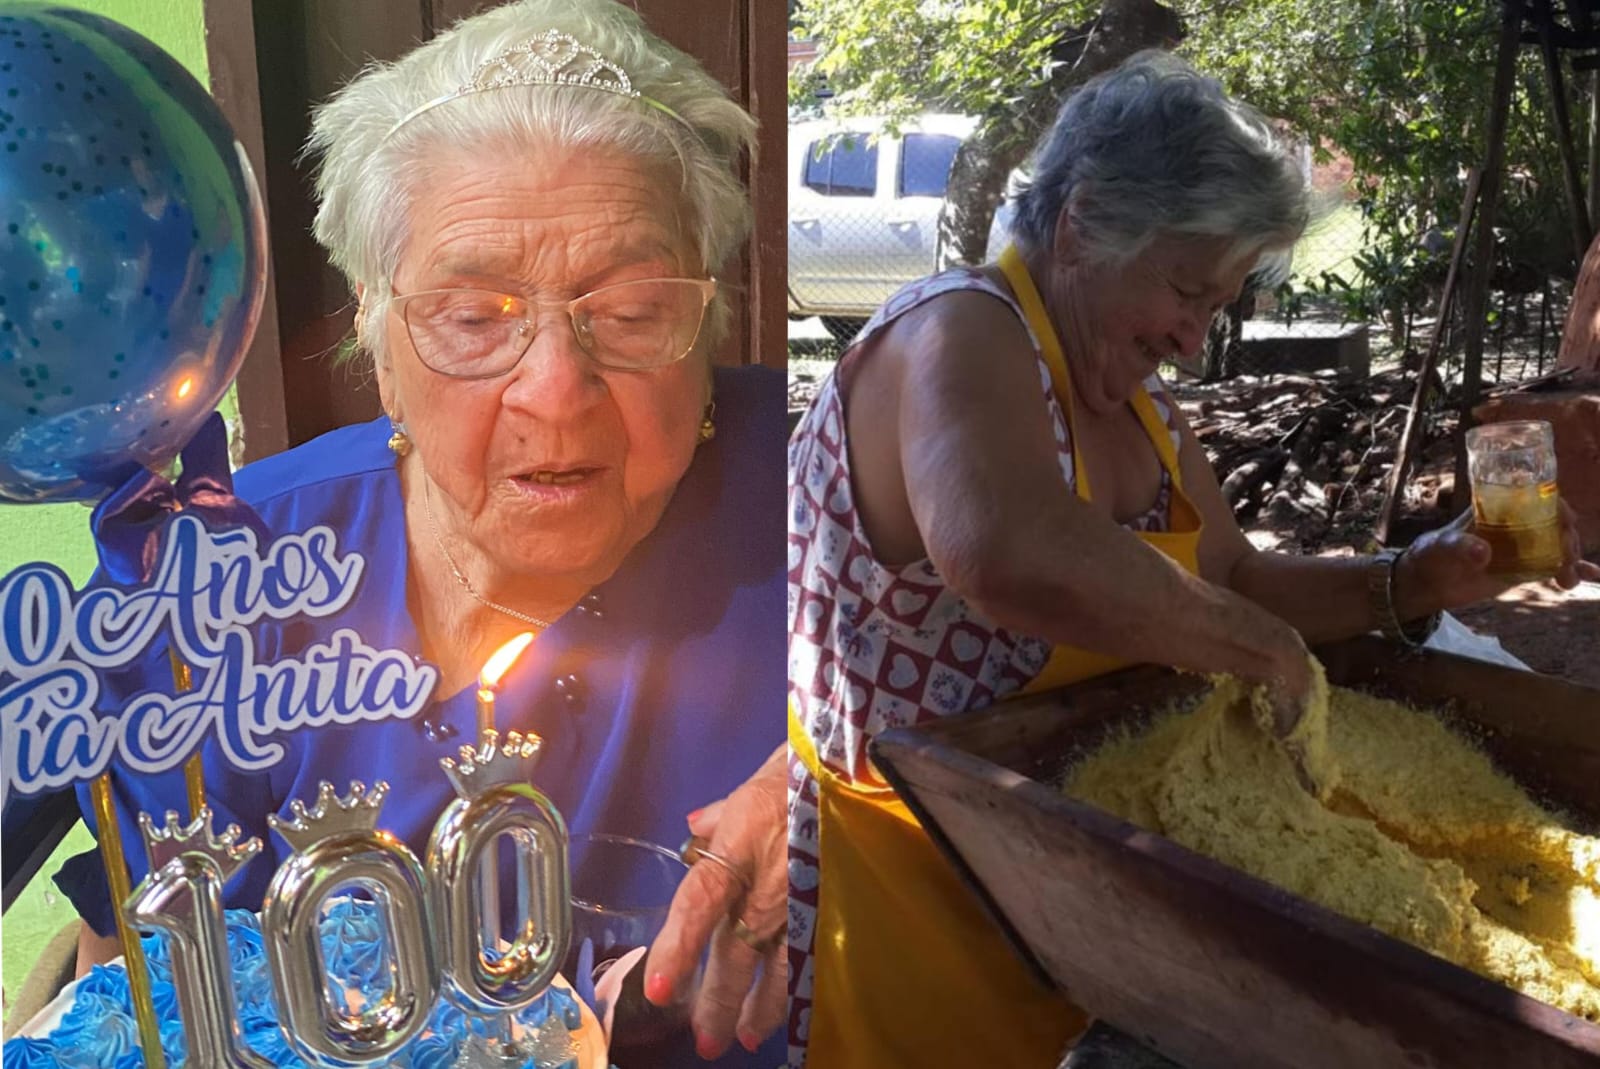 Tributo a la vida por los festejos de 100 años de la tía abuela Anita